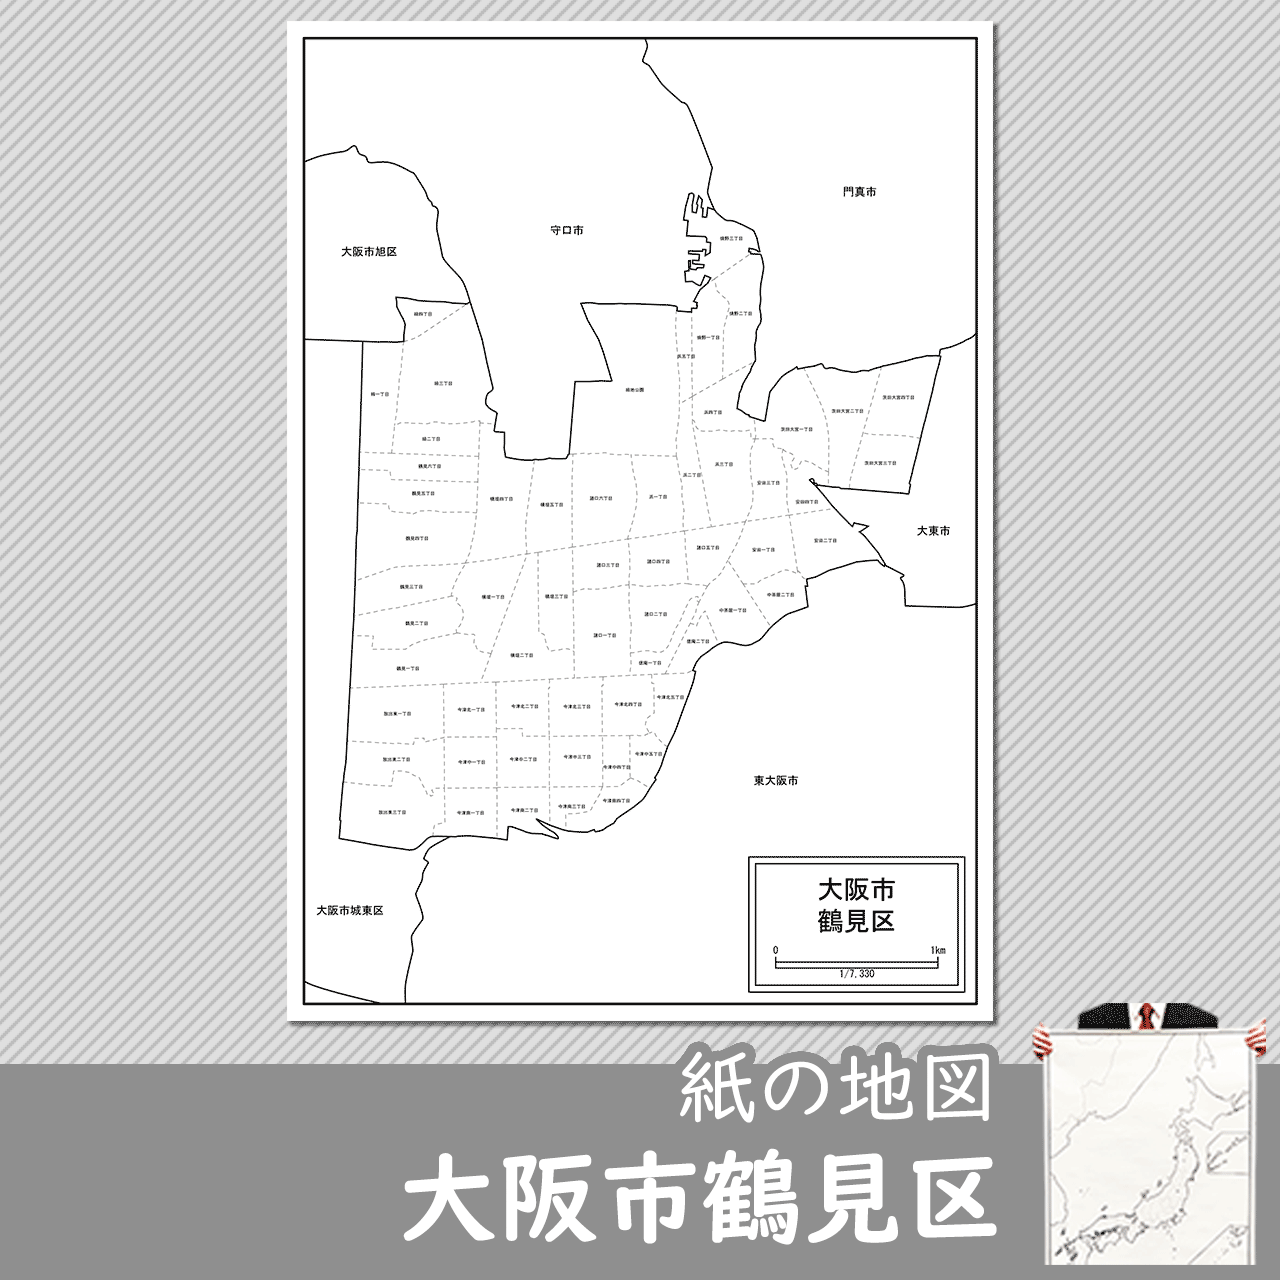 大阪市鶴見区の紙の白地図のサムネイル